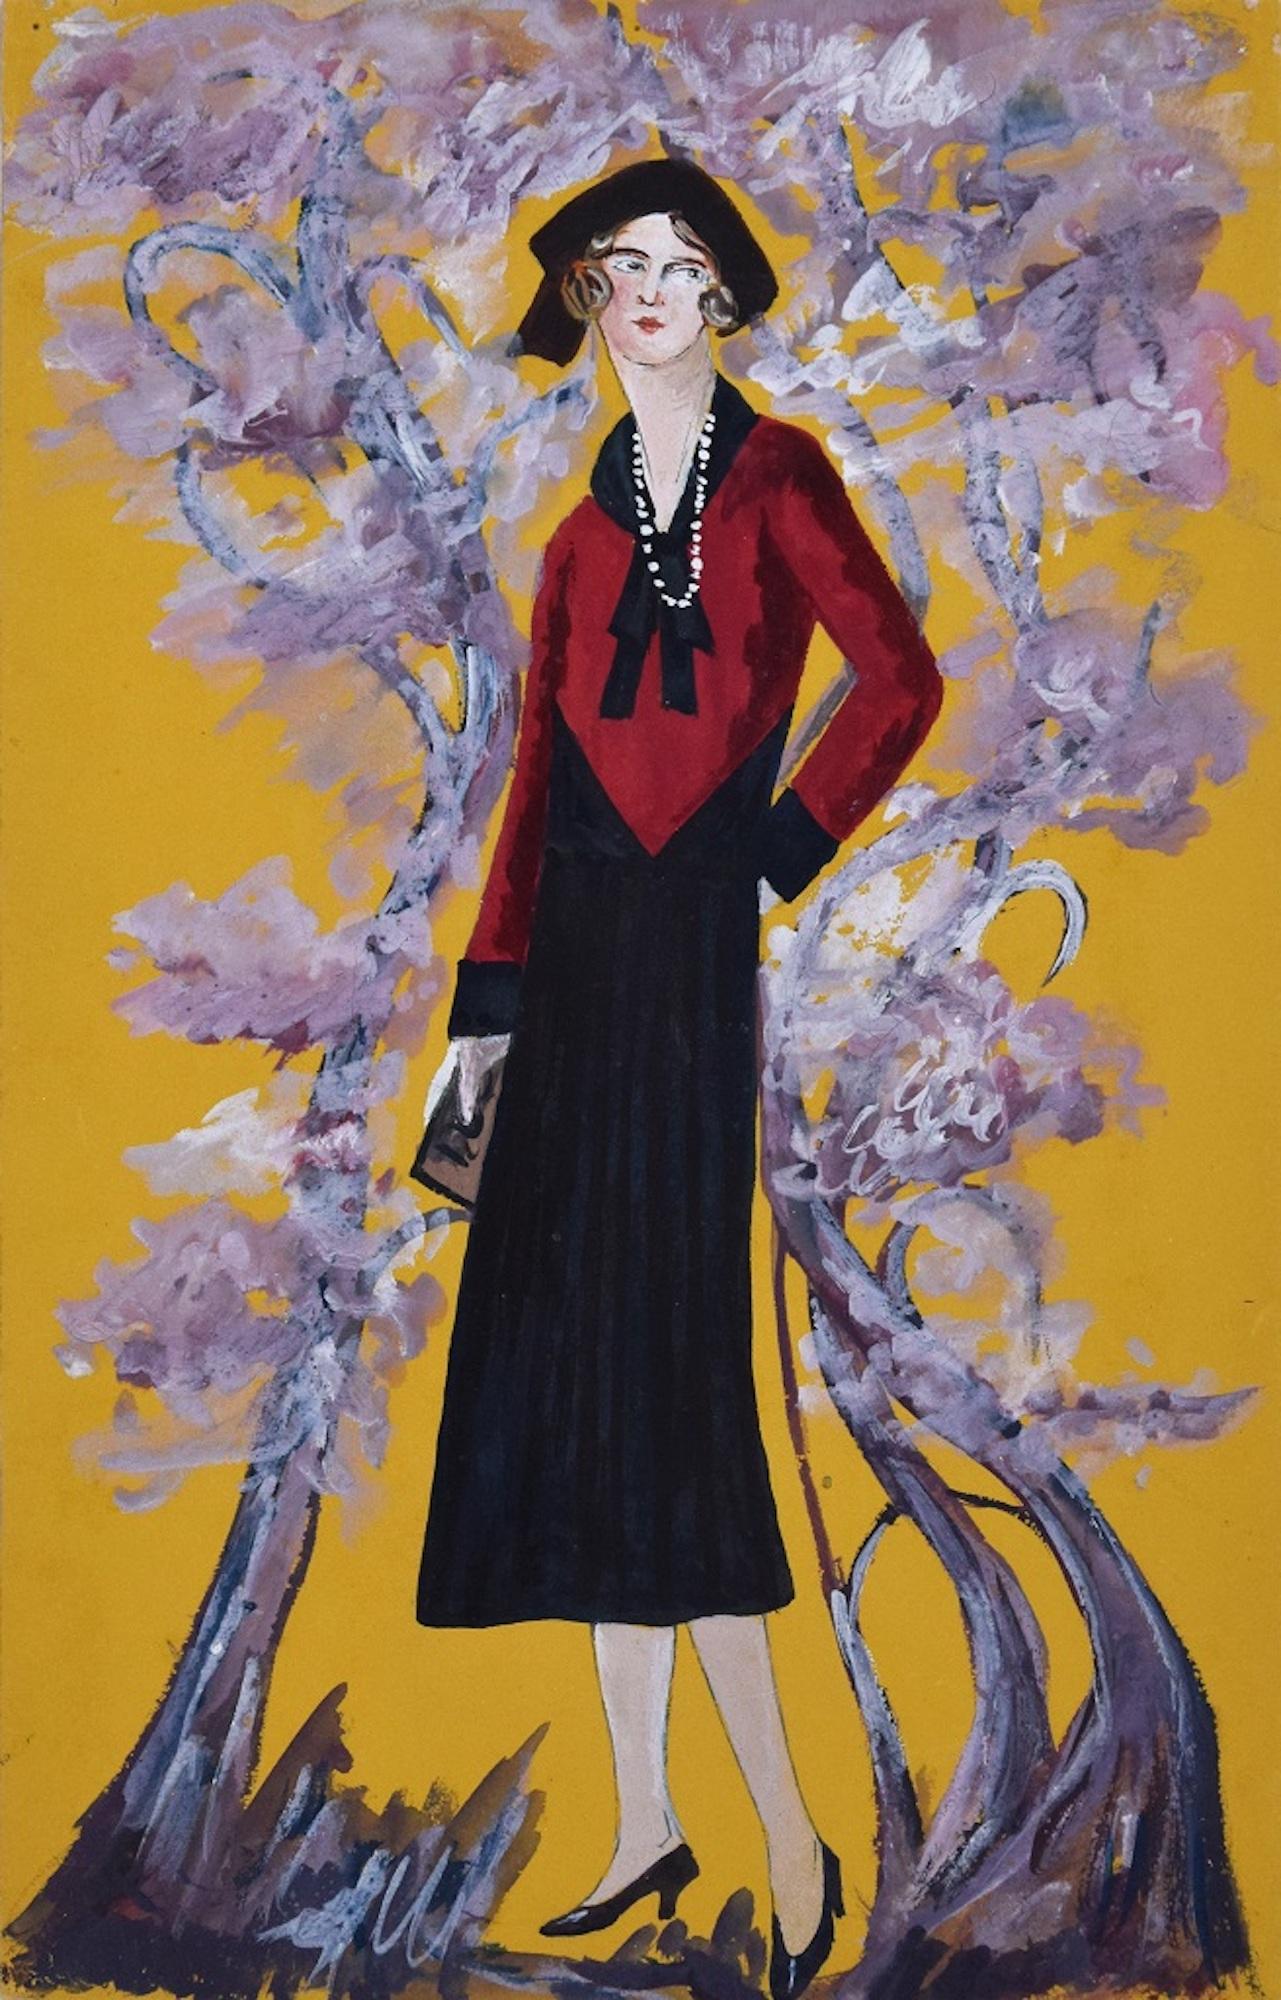 Madame im Blütengarten ist ein Originalgemälde von Lucie Navier aus dem Jahre 1931.

Original-Tempera auf Papier. 

Sehr guter Zustand. 

Bunte Zusammensetzung, die eine weibliche Figur mit einem eleganten Anzug und einem insgesamt gelben